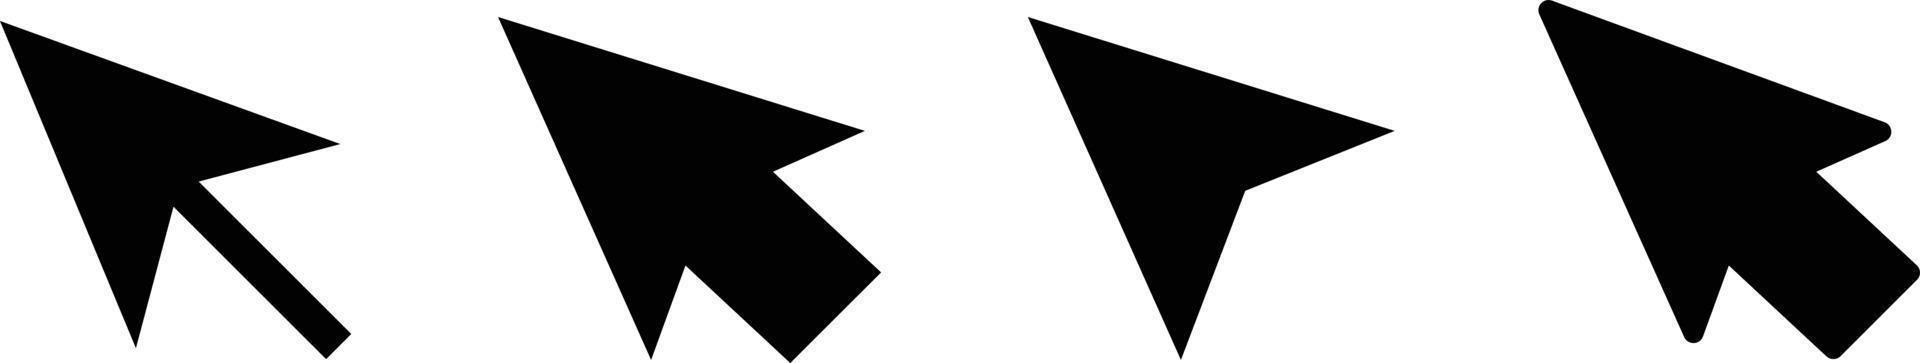 Maus Mauszeiger Symbol einstellen von verschiedene Formen. Vektor. vektor